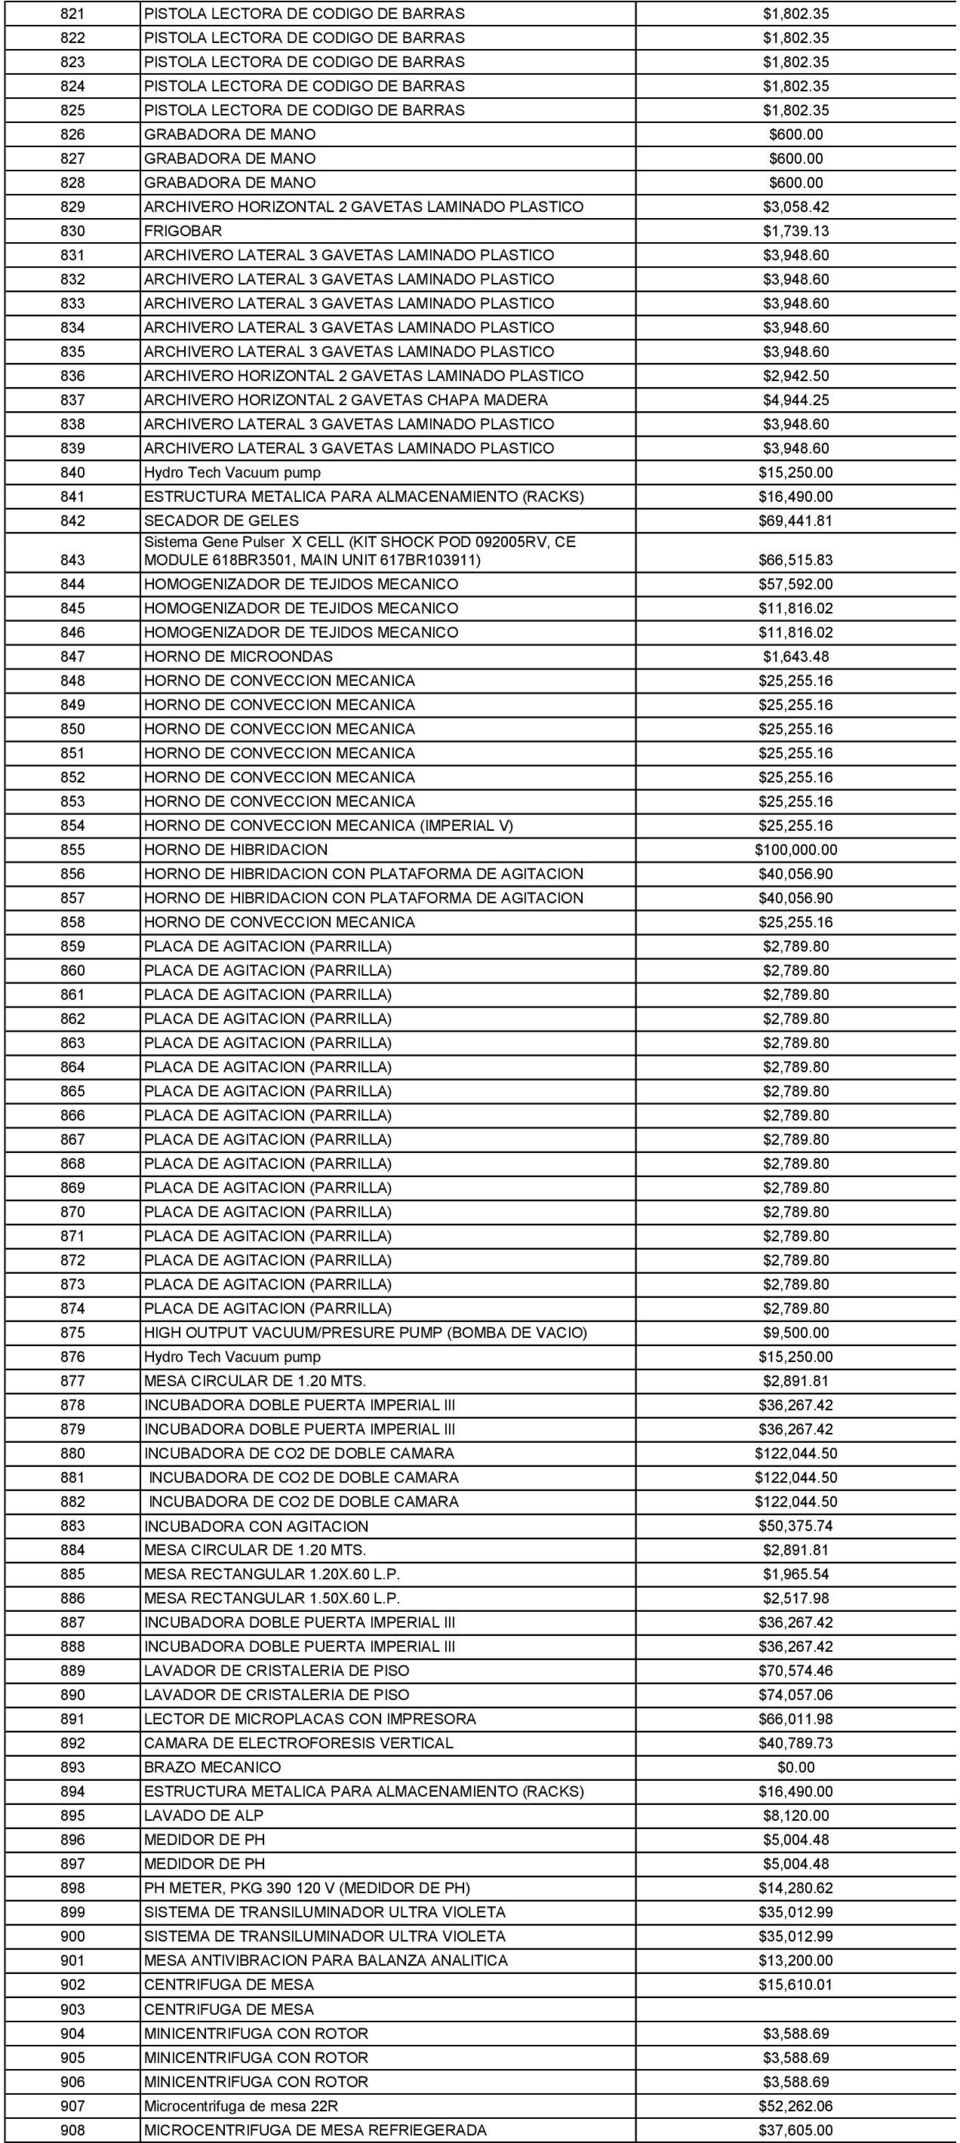 00 829 ARCHIVERO HORIZONTAL 2 GAVETAS LAMINADO PLASTICO $3,058.42 830 FRIGOBAR $1,739.13 831 ARCHIVERO LATERAL 3 GAVETAS LAMINADO PLASTICO $3,948.